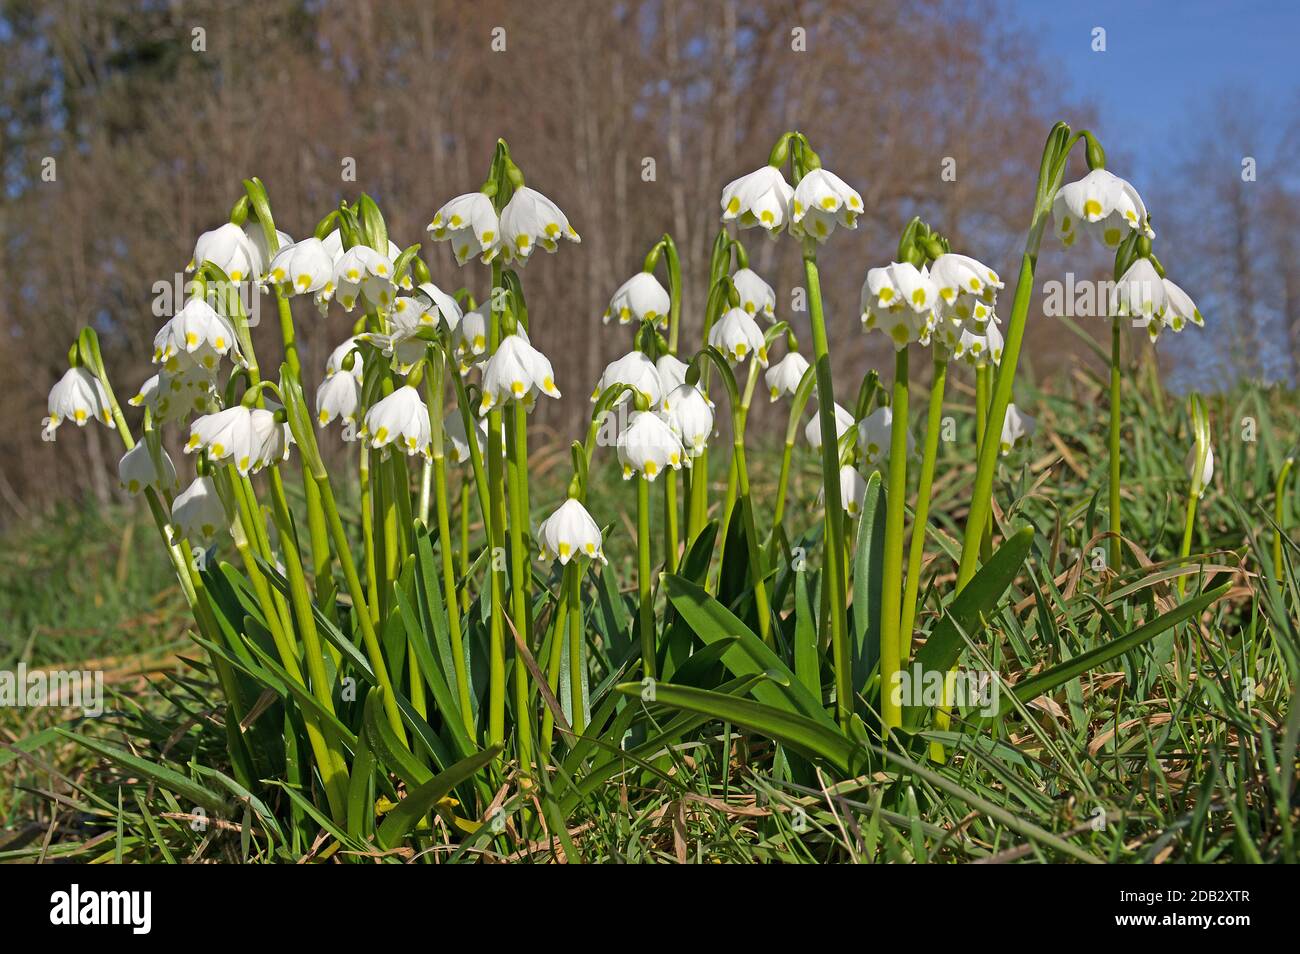 Flocon de neige printanier (Leucojum vernum), plantes à fleurs dans un pré. Allemagne Banque D'Images